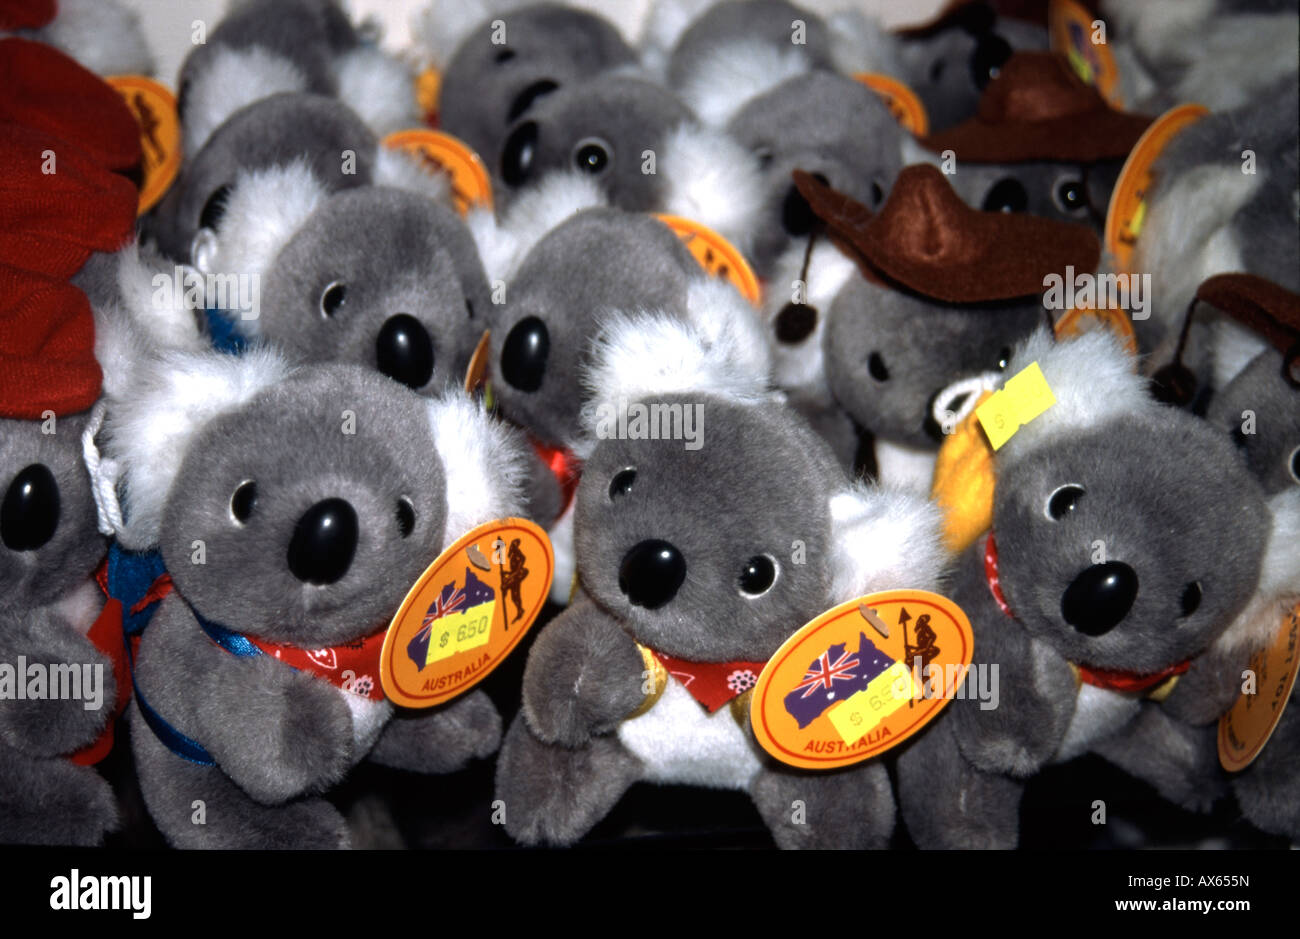 Ours koala jouet en vente en magasin de souvenirs à Sydney Australie Banque D'Images